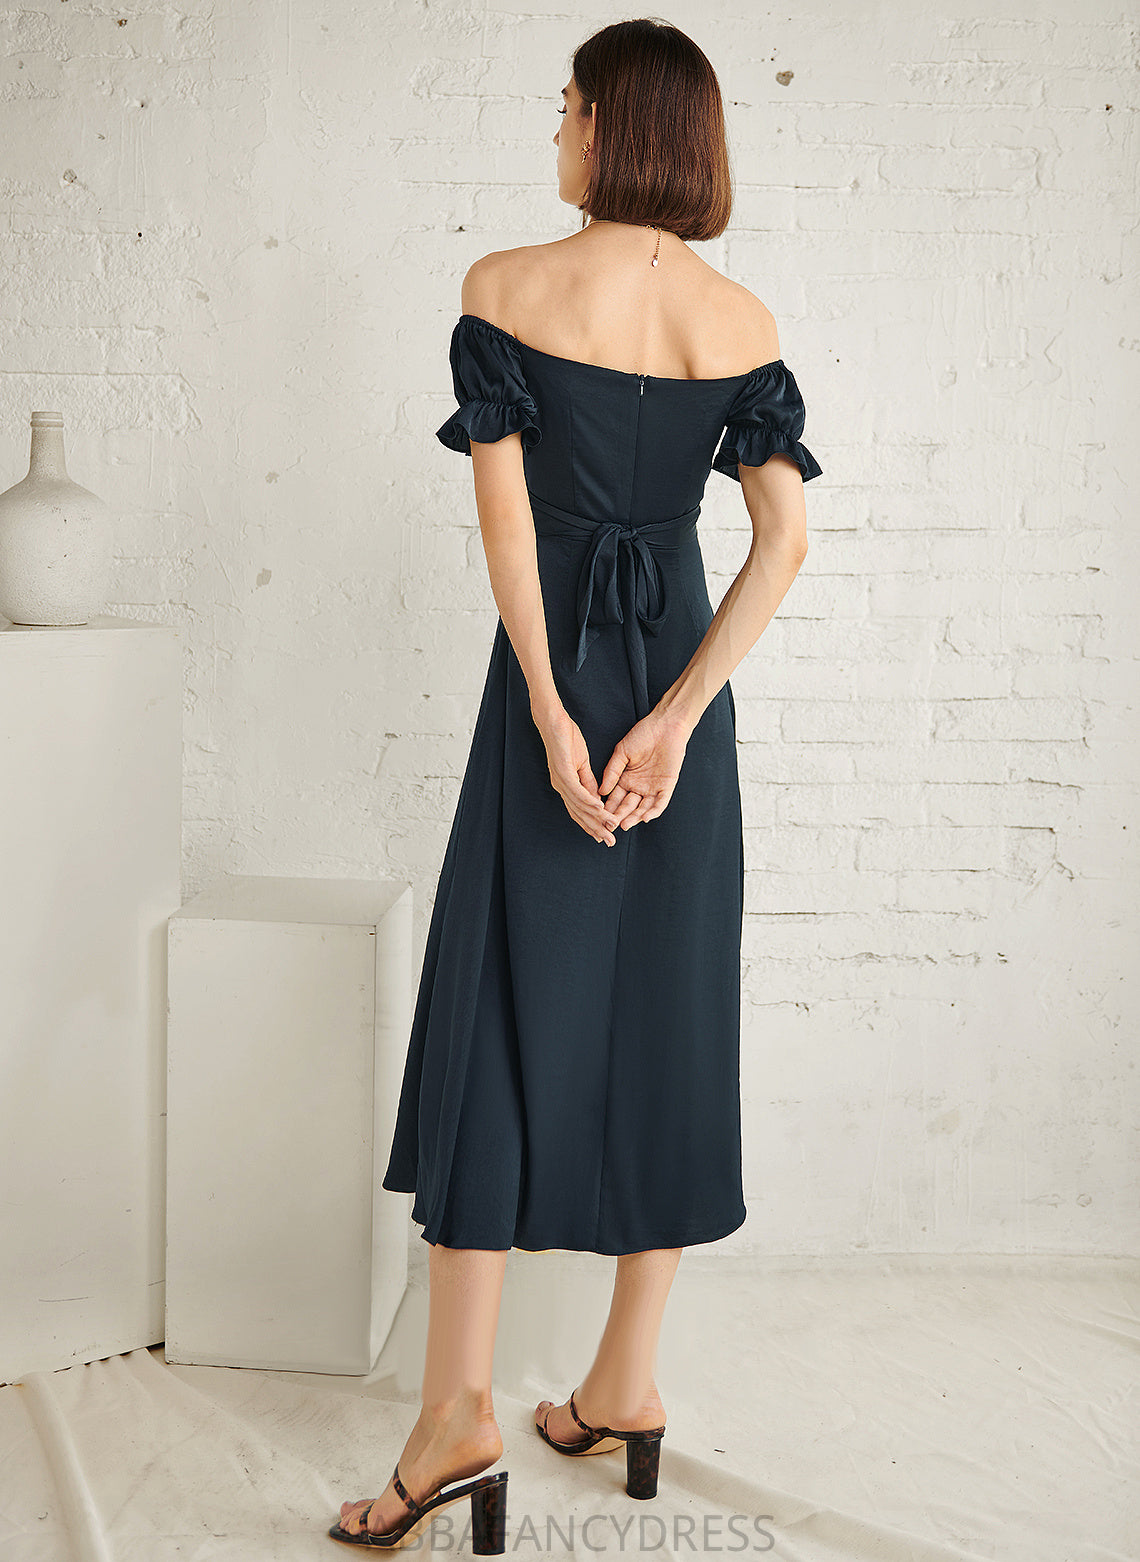 Cotton Dress Lauren Off-the-Shoulder Cocktail Dresses A-Line Cocktail Tea-Length Blends